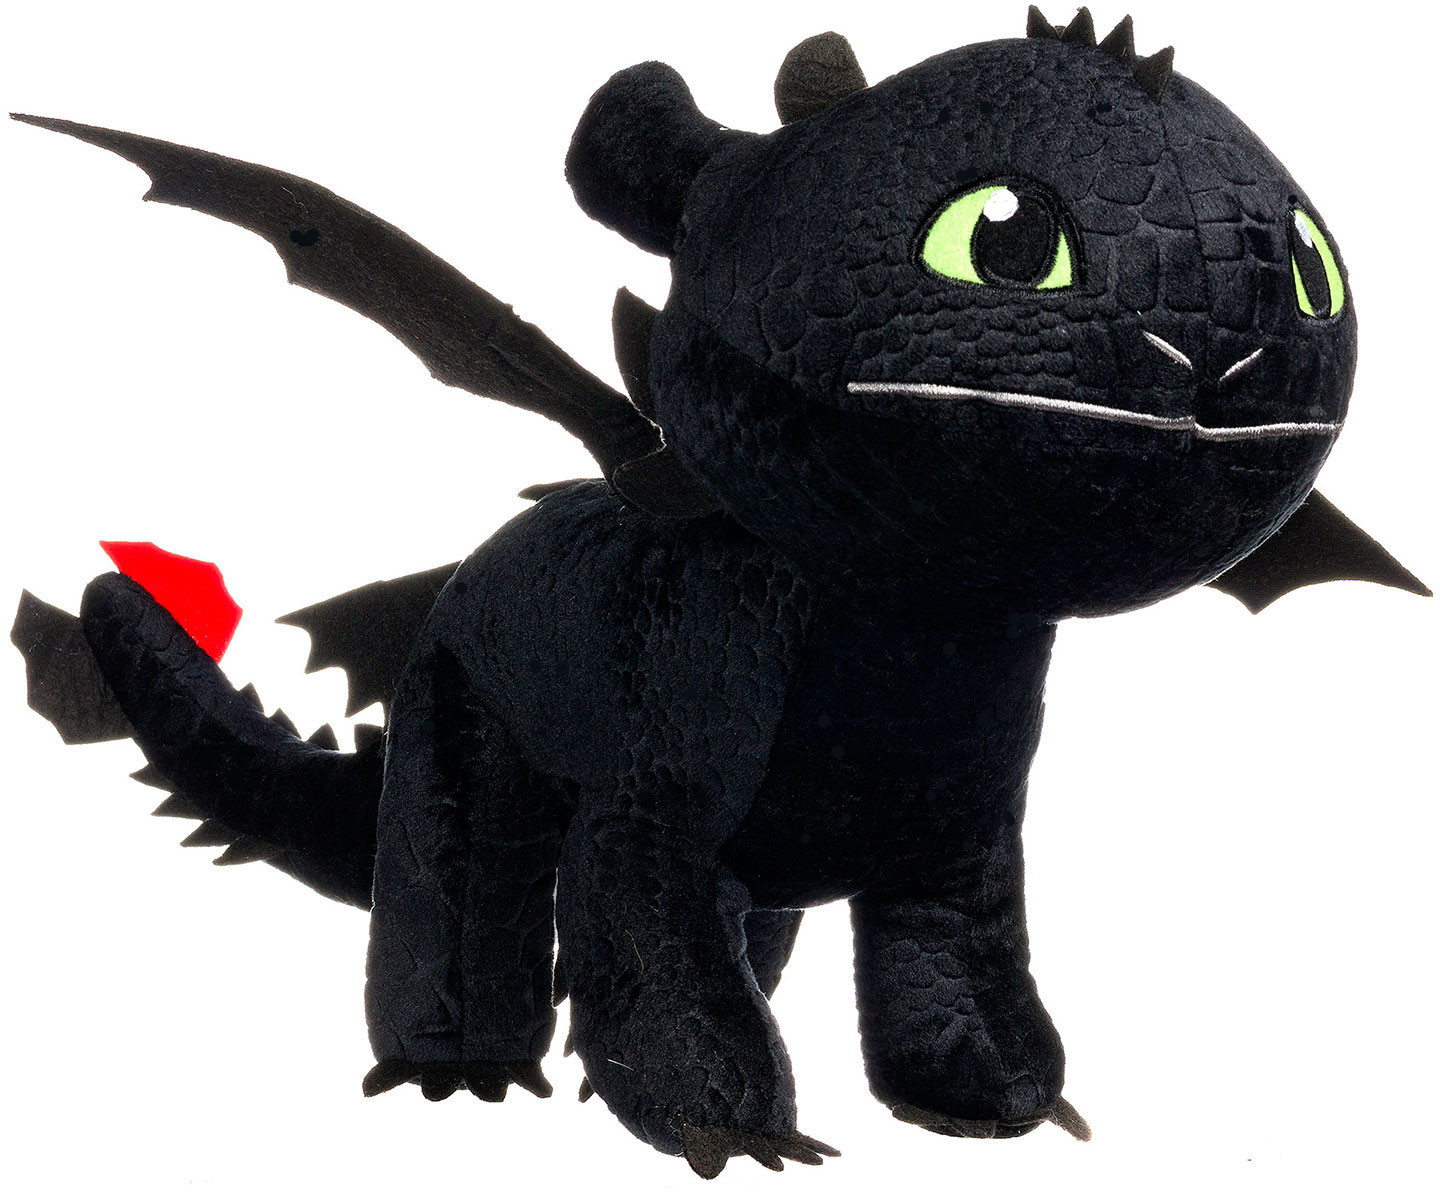 DreamWorks Dragons Drachenzähmen leicht gemacht 66,93 70 € Preisvergleich | cm ab Ohnezahn bei